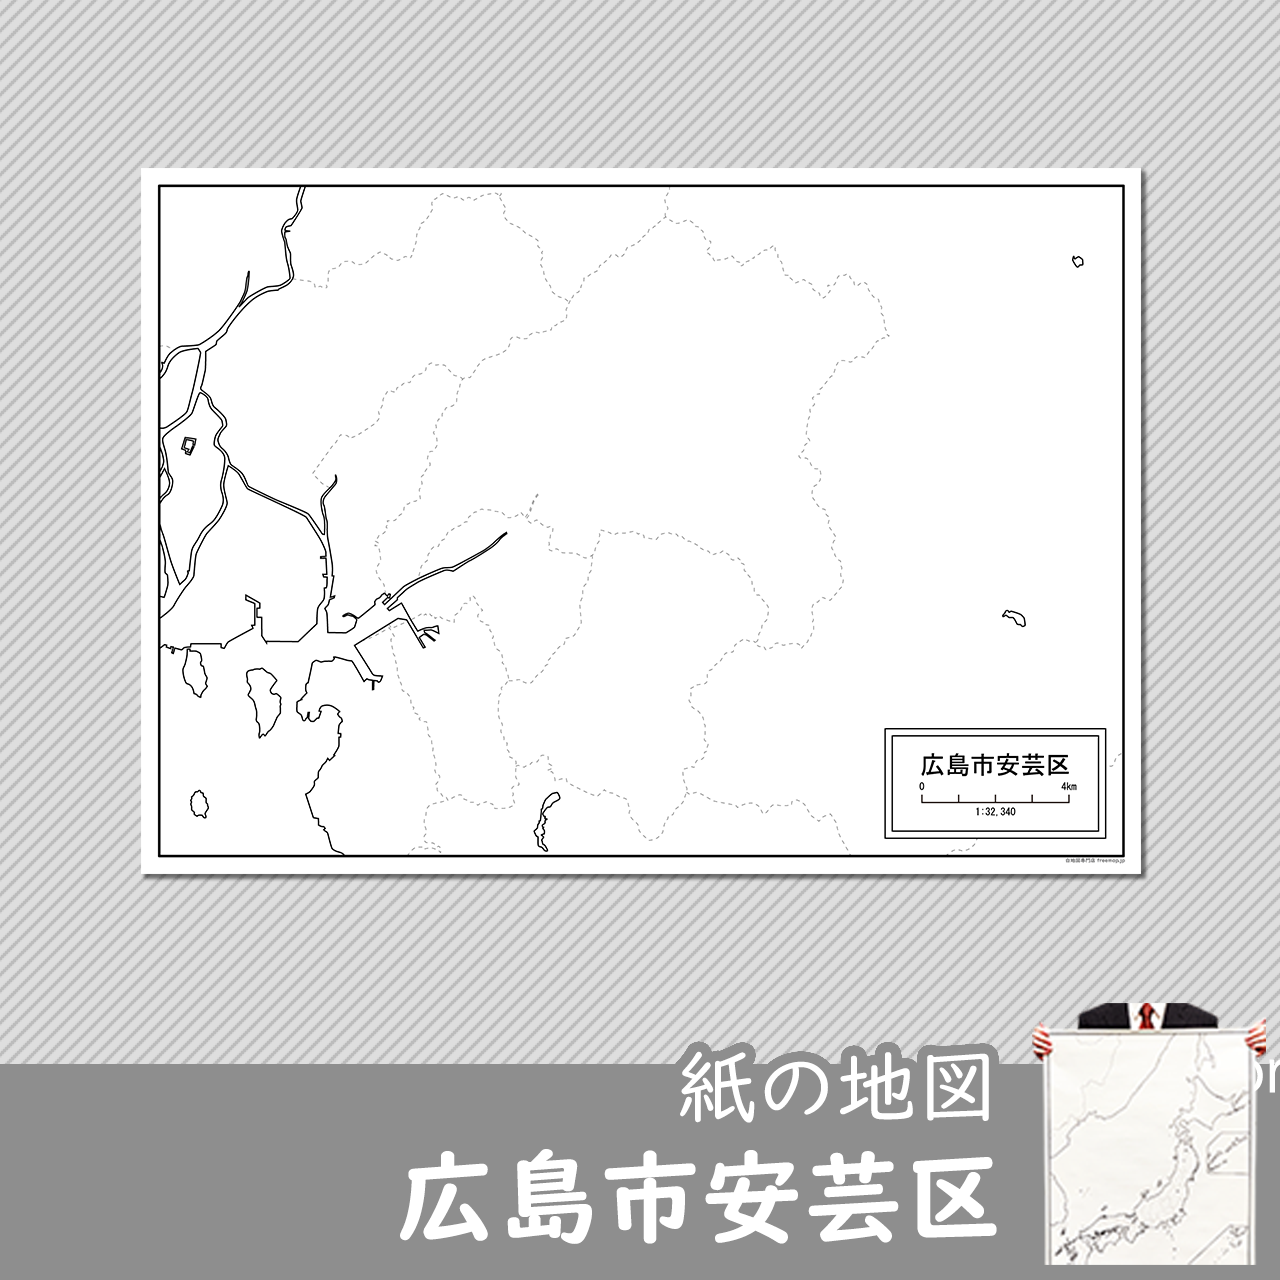 広島市安芸区の紙の白地図のサムネイル